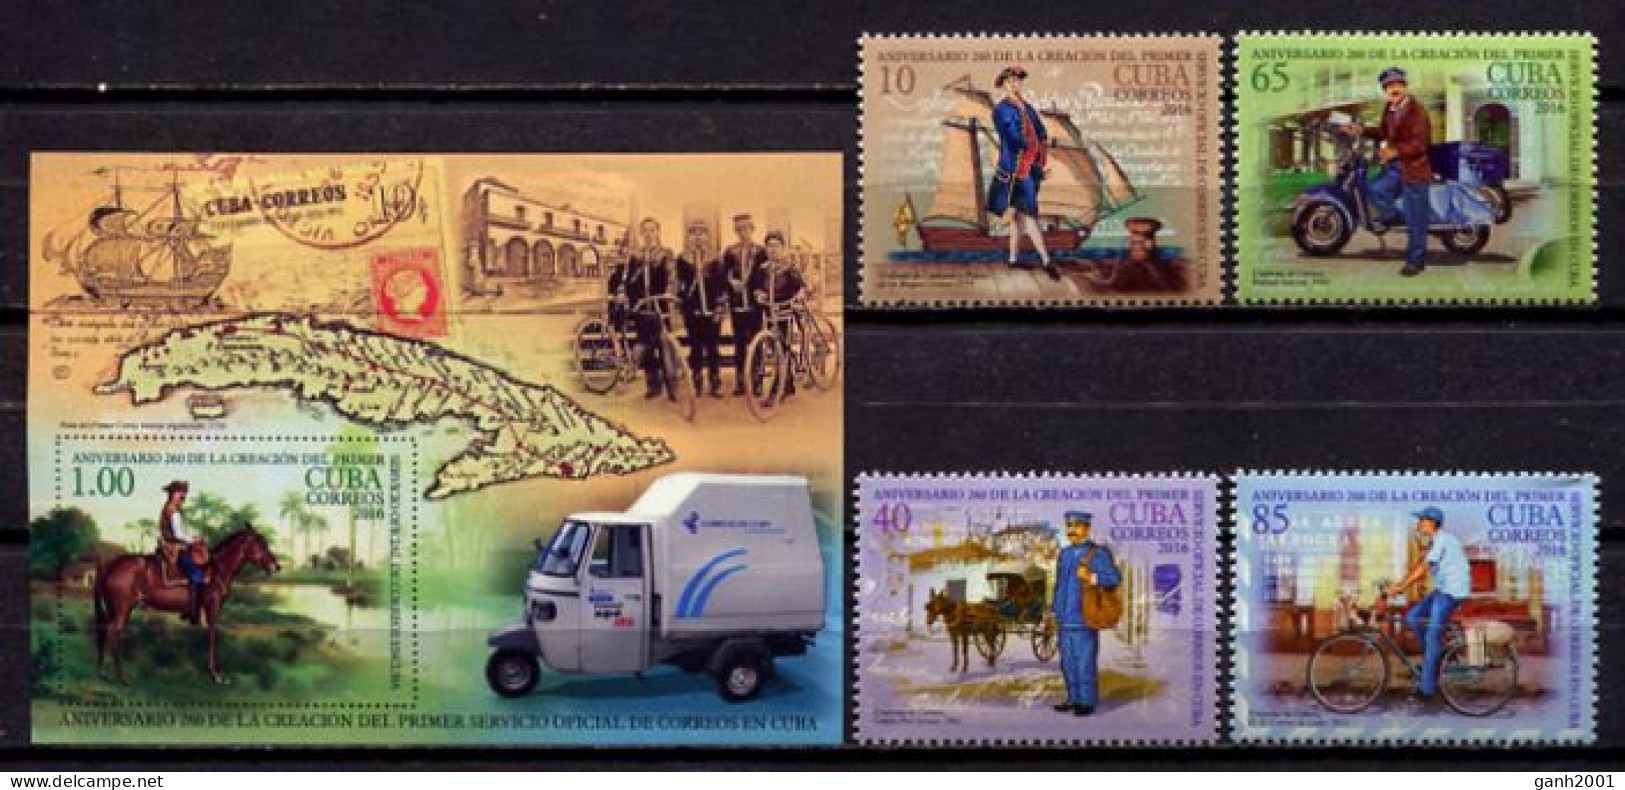 Cuba 2016 / 260 Years Of Postal Service MNH 260 Años Del Correo 260 Jahre Post / Hz19  C1-6 - Post